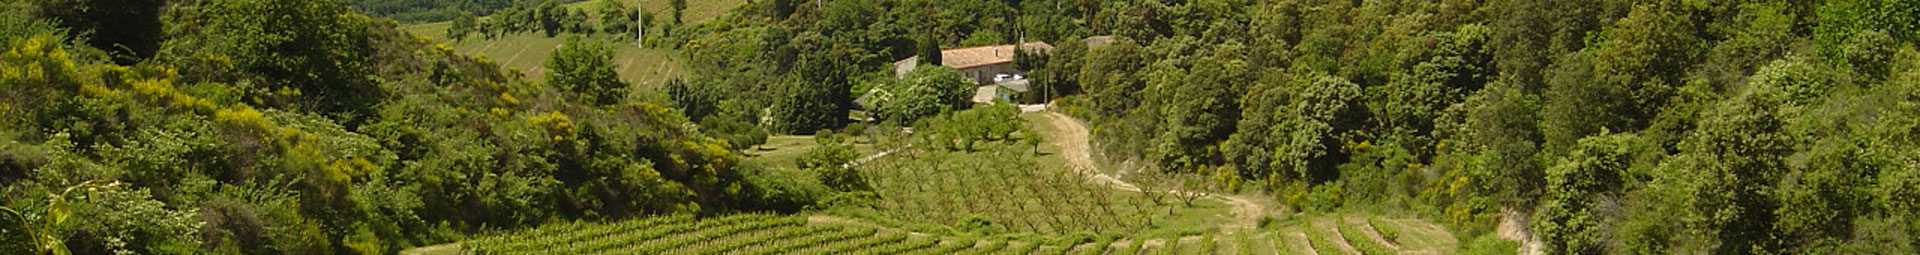 Les chemins du sud - Vente de domaine et de propriété viticole